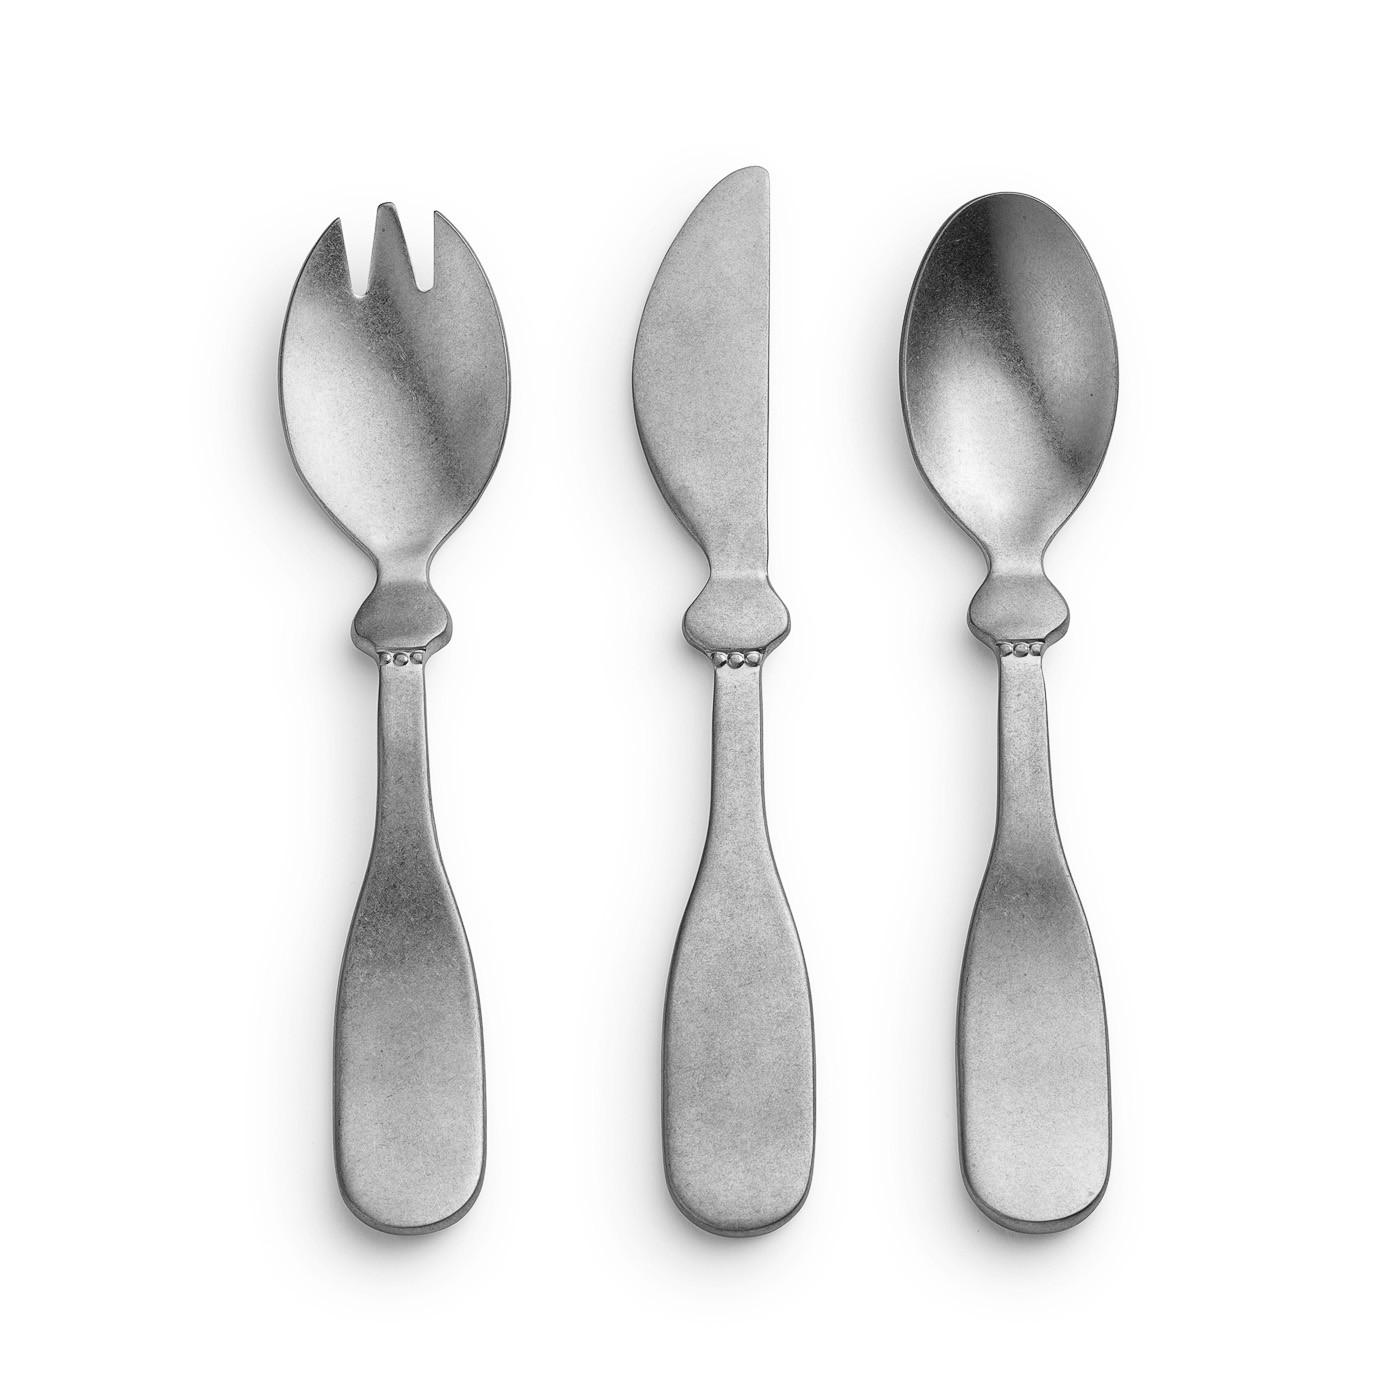 Elodie - Baby bestek -mes, vork en lepel Antique Silver